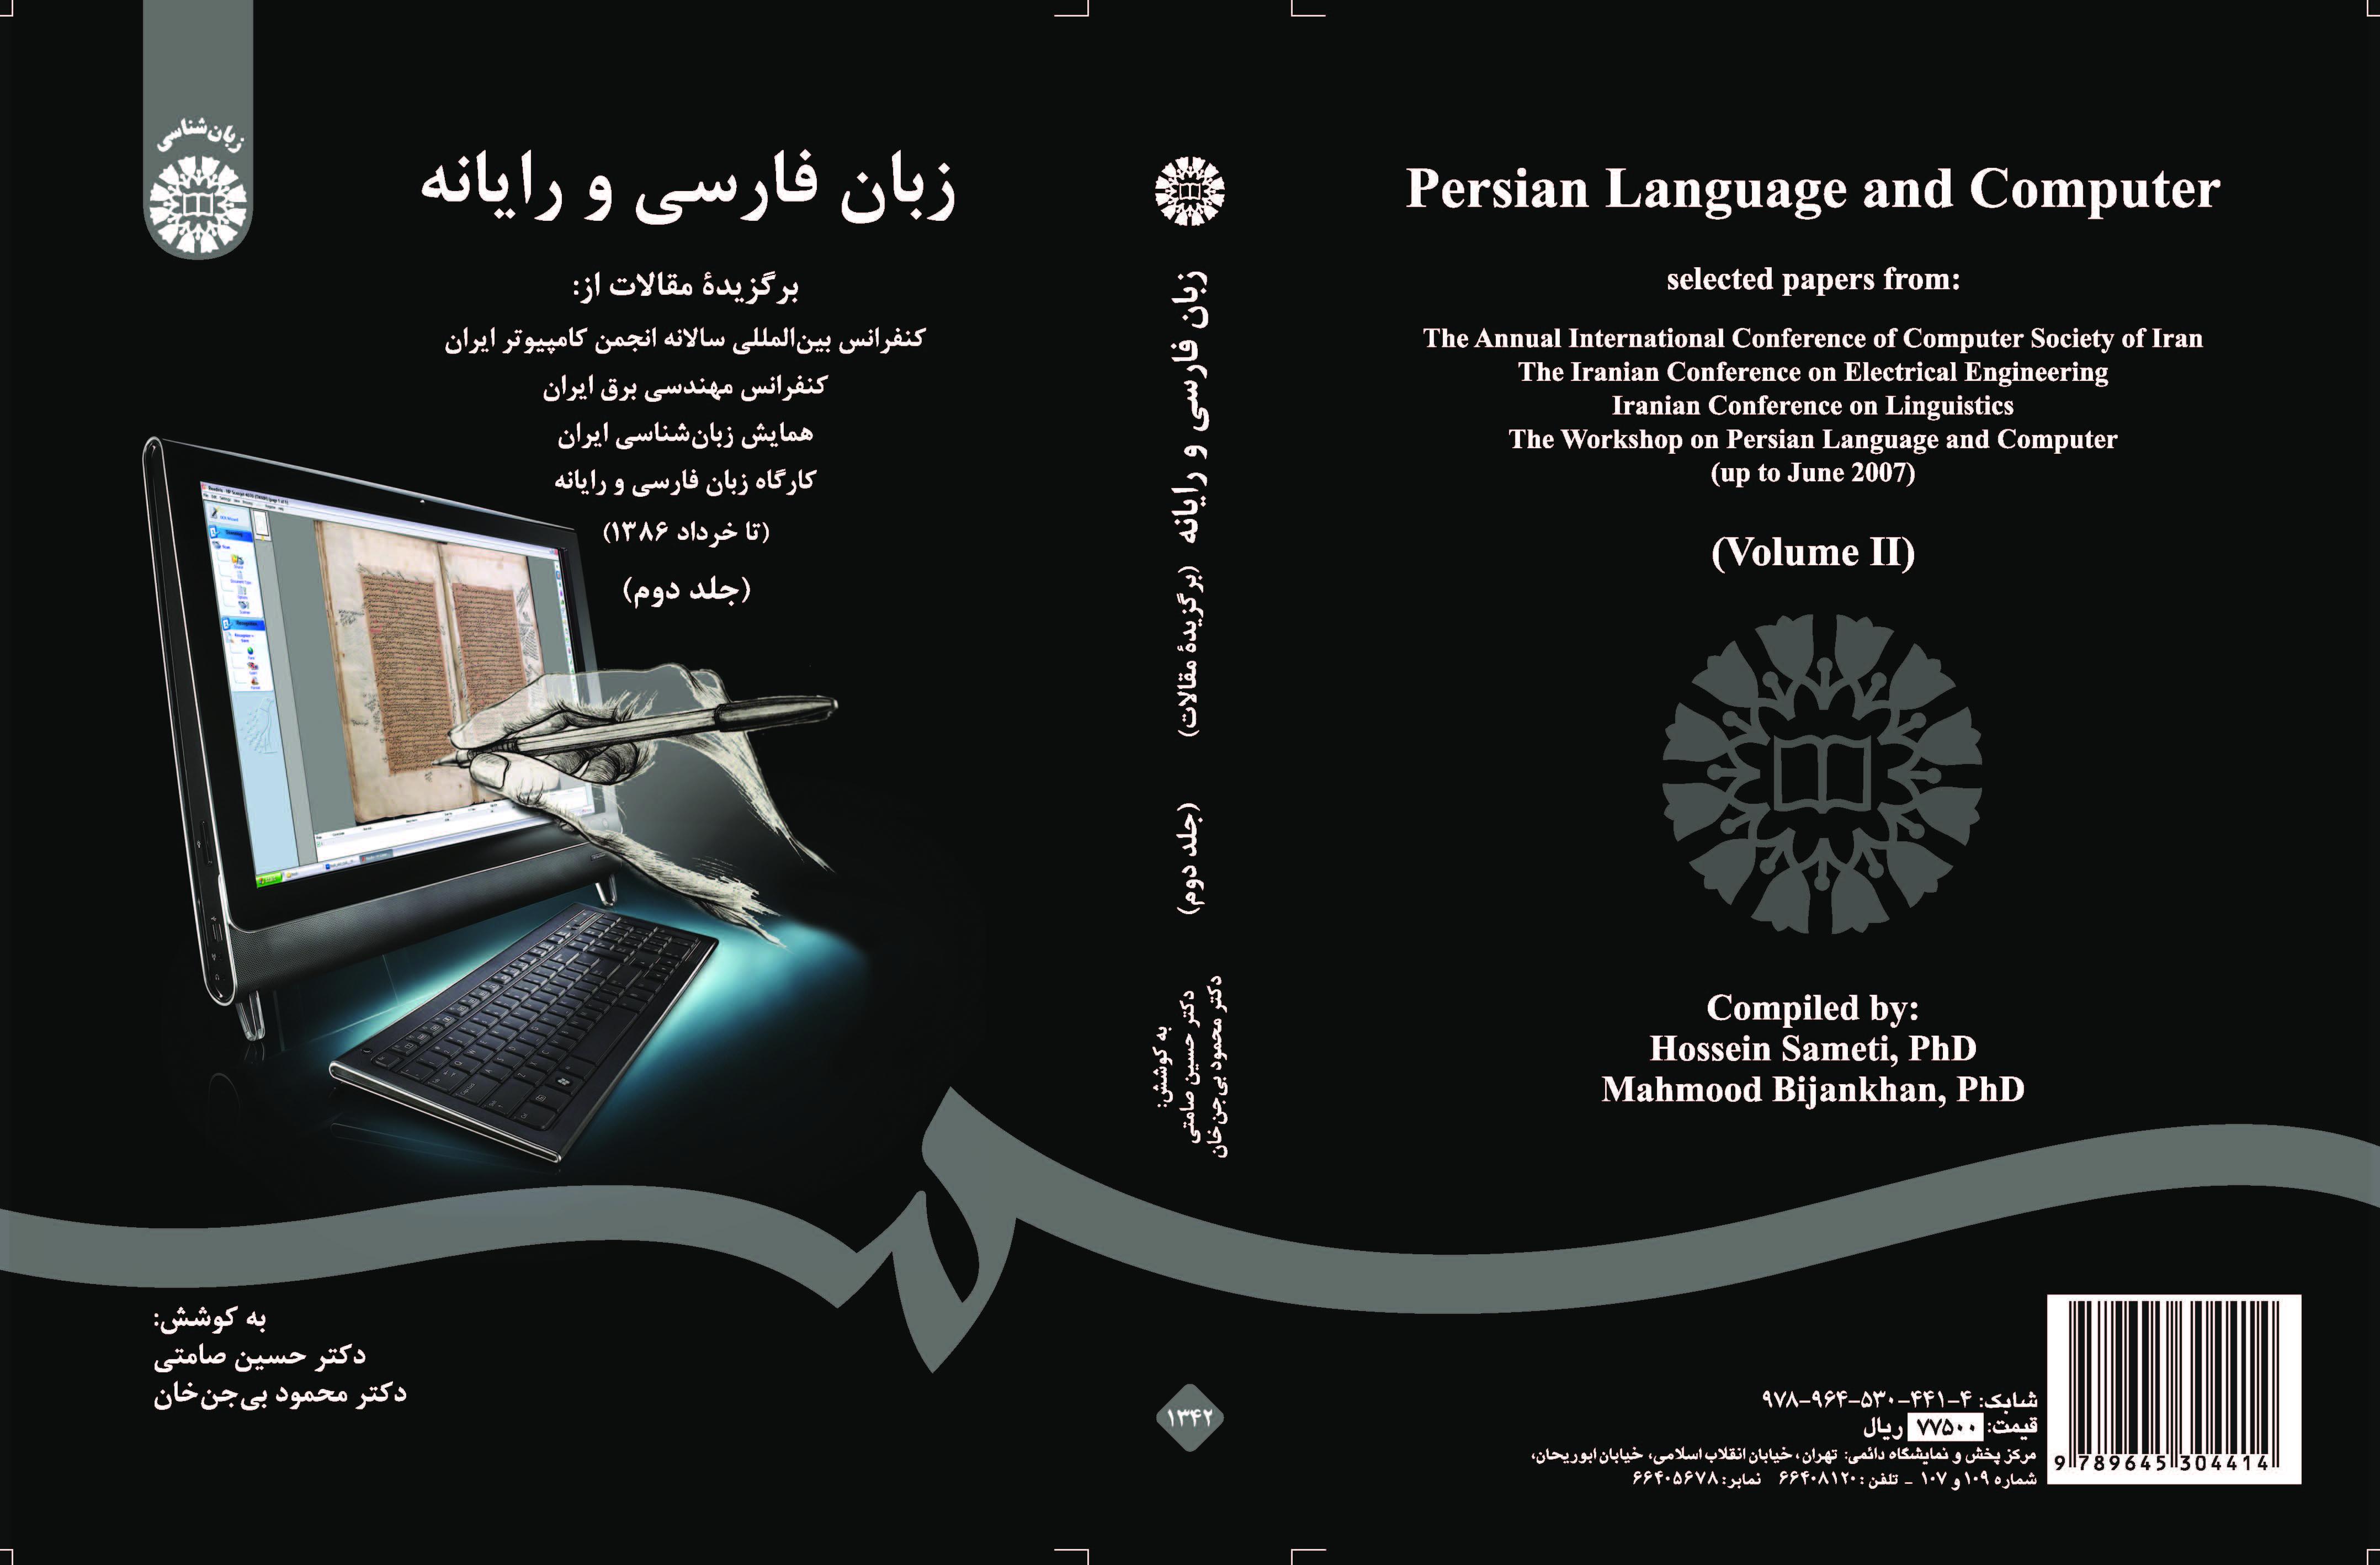 اللغة الفارسية والحاسوب: المقالات المختارة في المؤتمر الدولي السنوي لجمعية الحاسبات الإيرانية ... (المجلد 2)